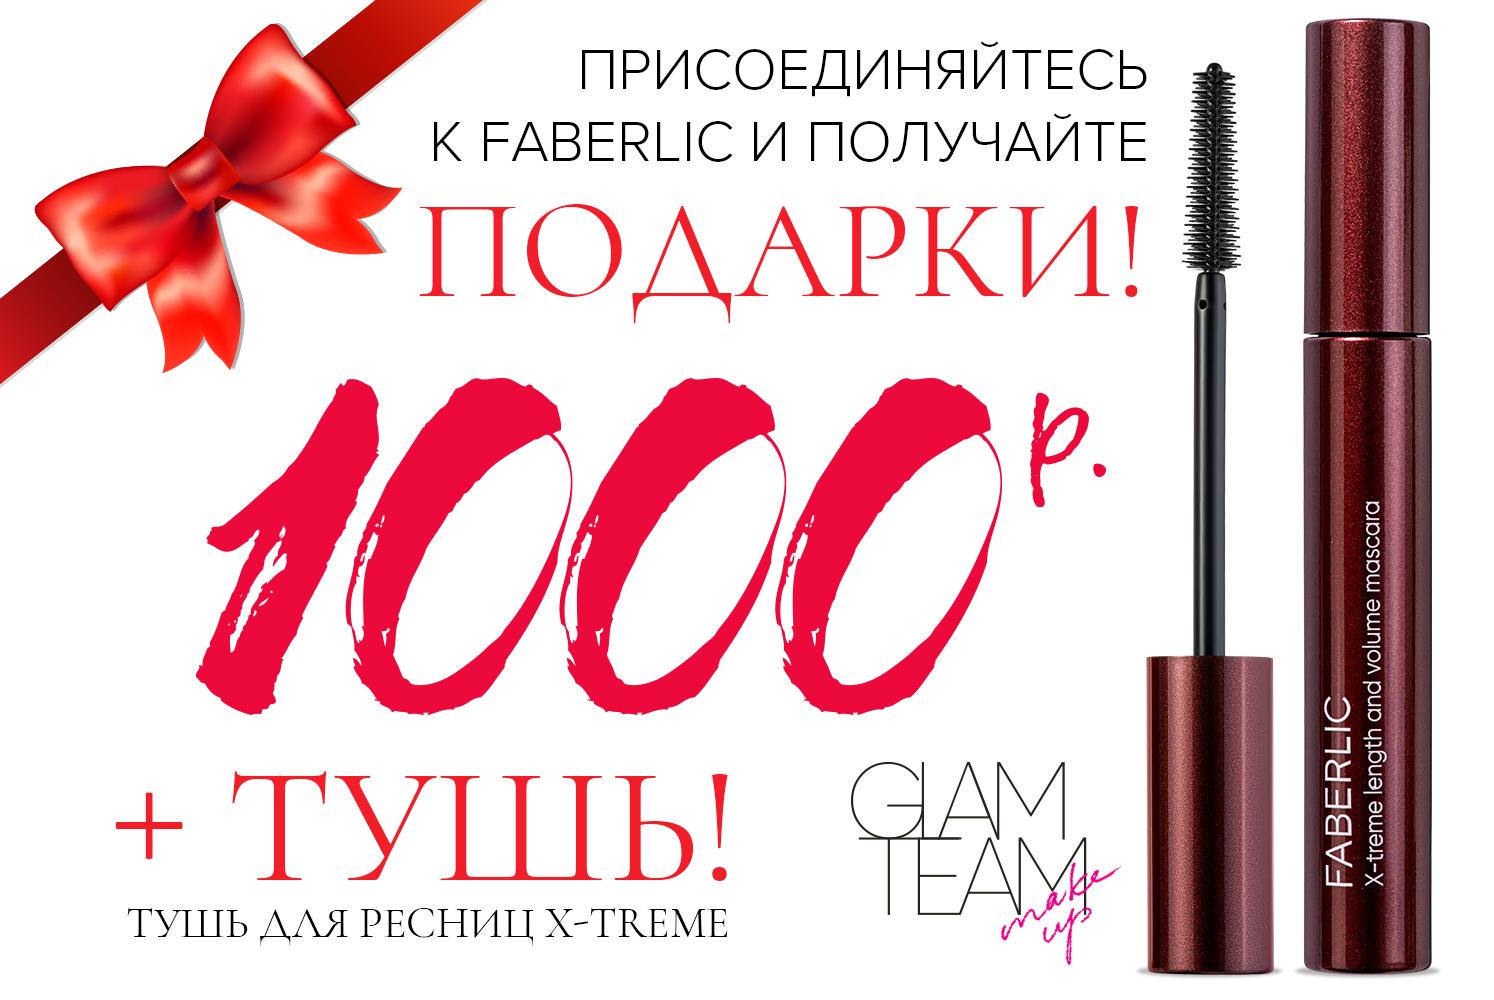 1000 рублей и тушь X-treme в подарок новым покупателям!